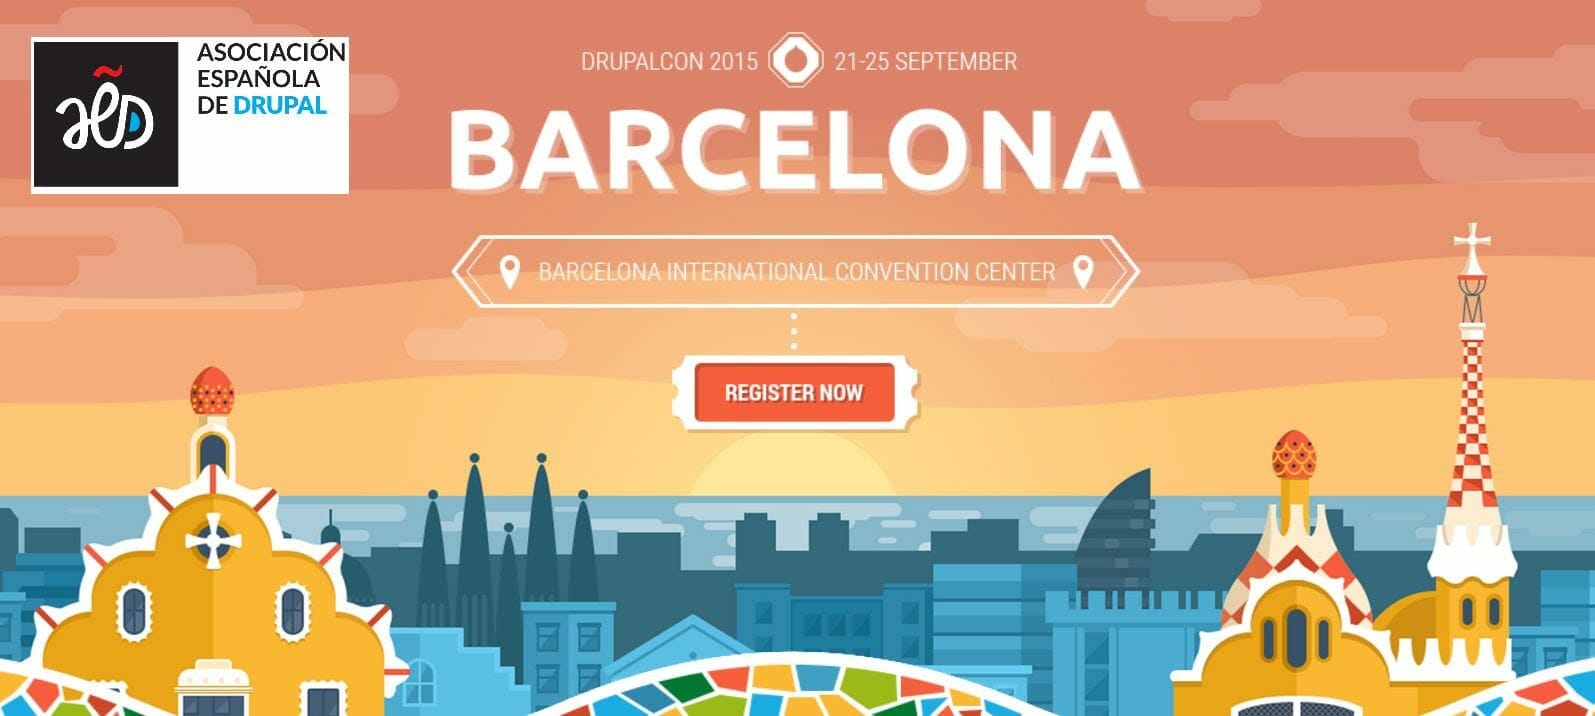 Conferencia Europea de Drupal 2015 en Barcelona